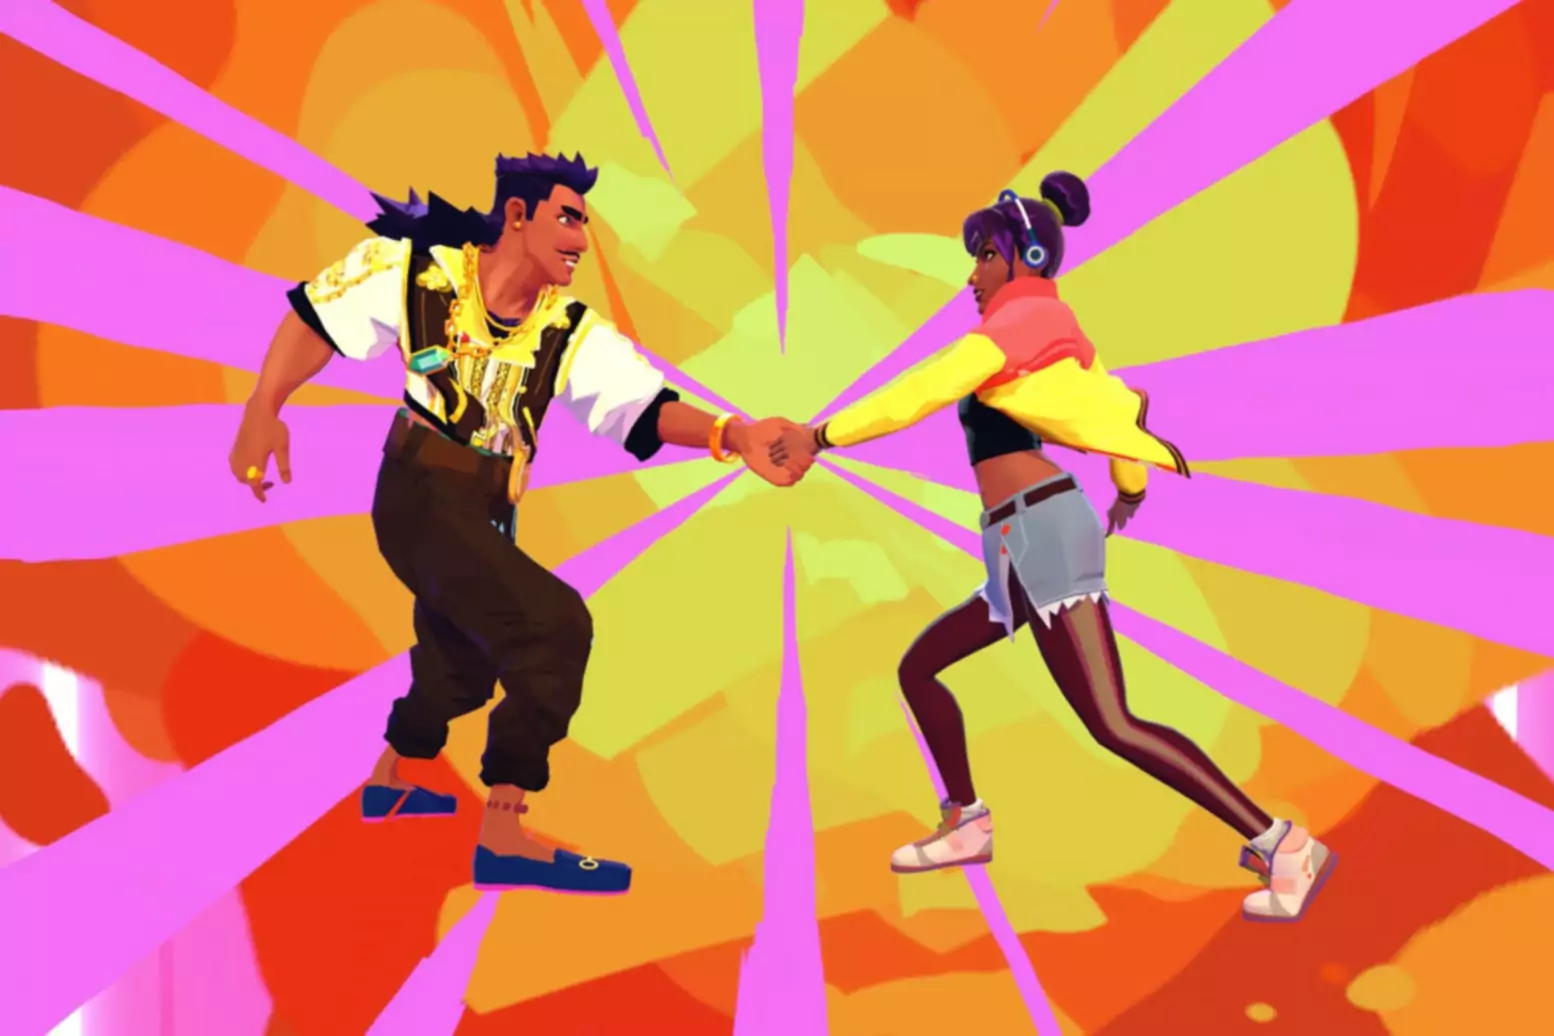 Zaslonska slika igre Thirsty Suitors z dvema likoma, ki si podajata roke na svetlem barvitem ozadju